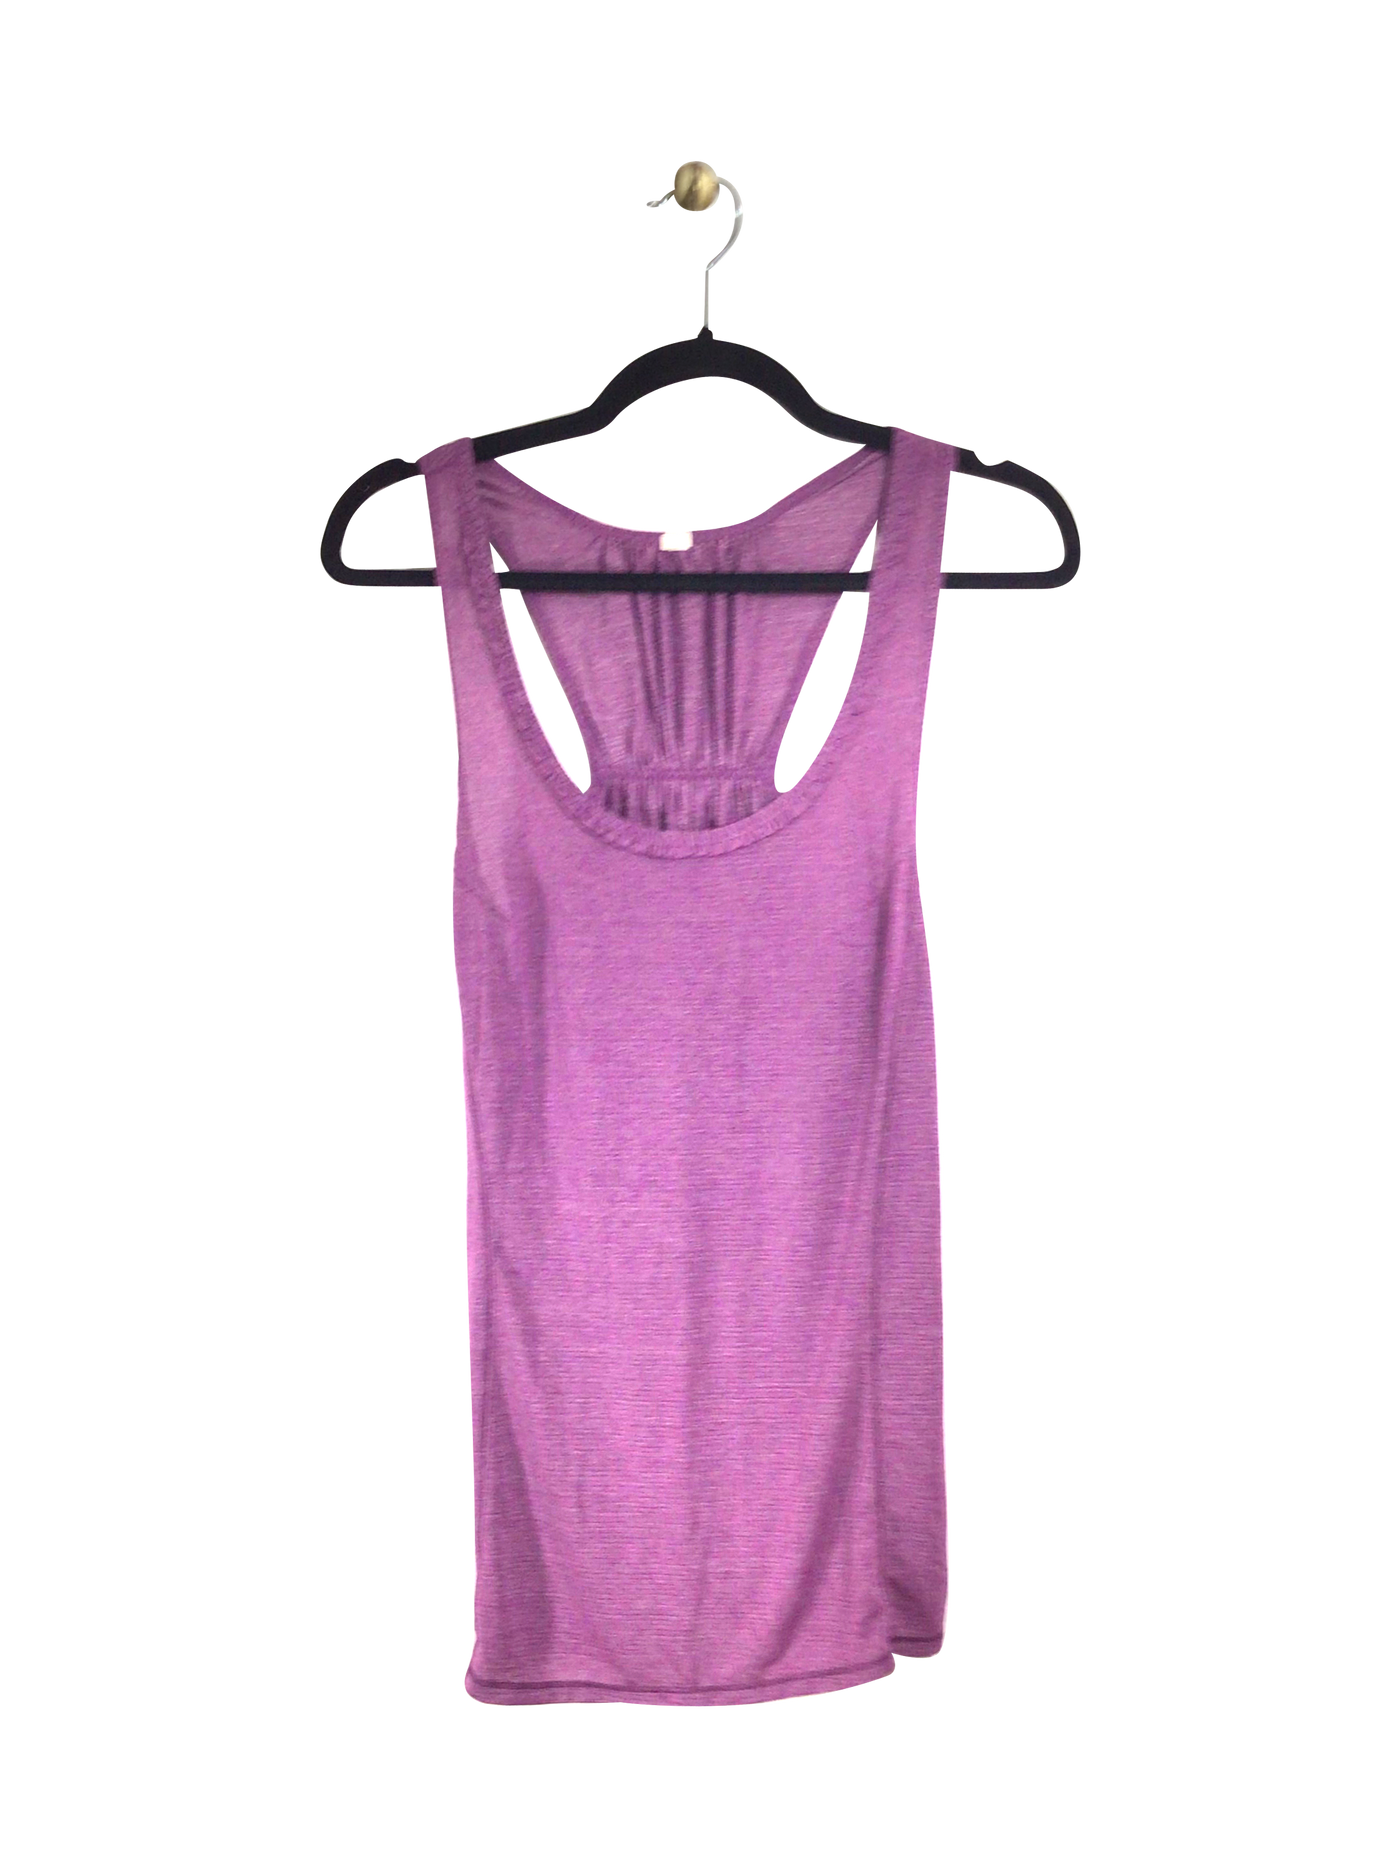 UNBRANDED Activewear Top Regular fit in Purple - Size S | 8.99 $ KOOP